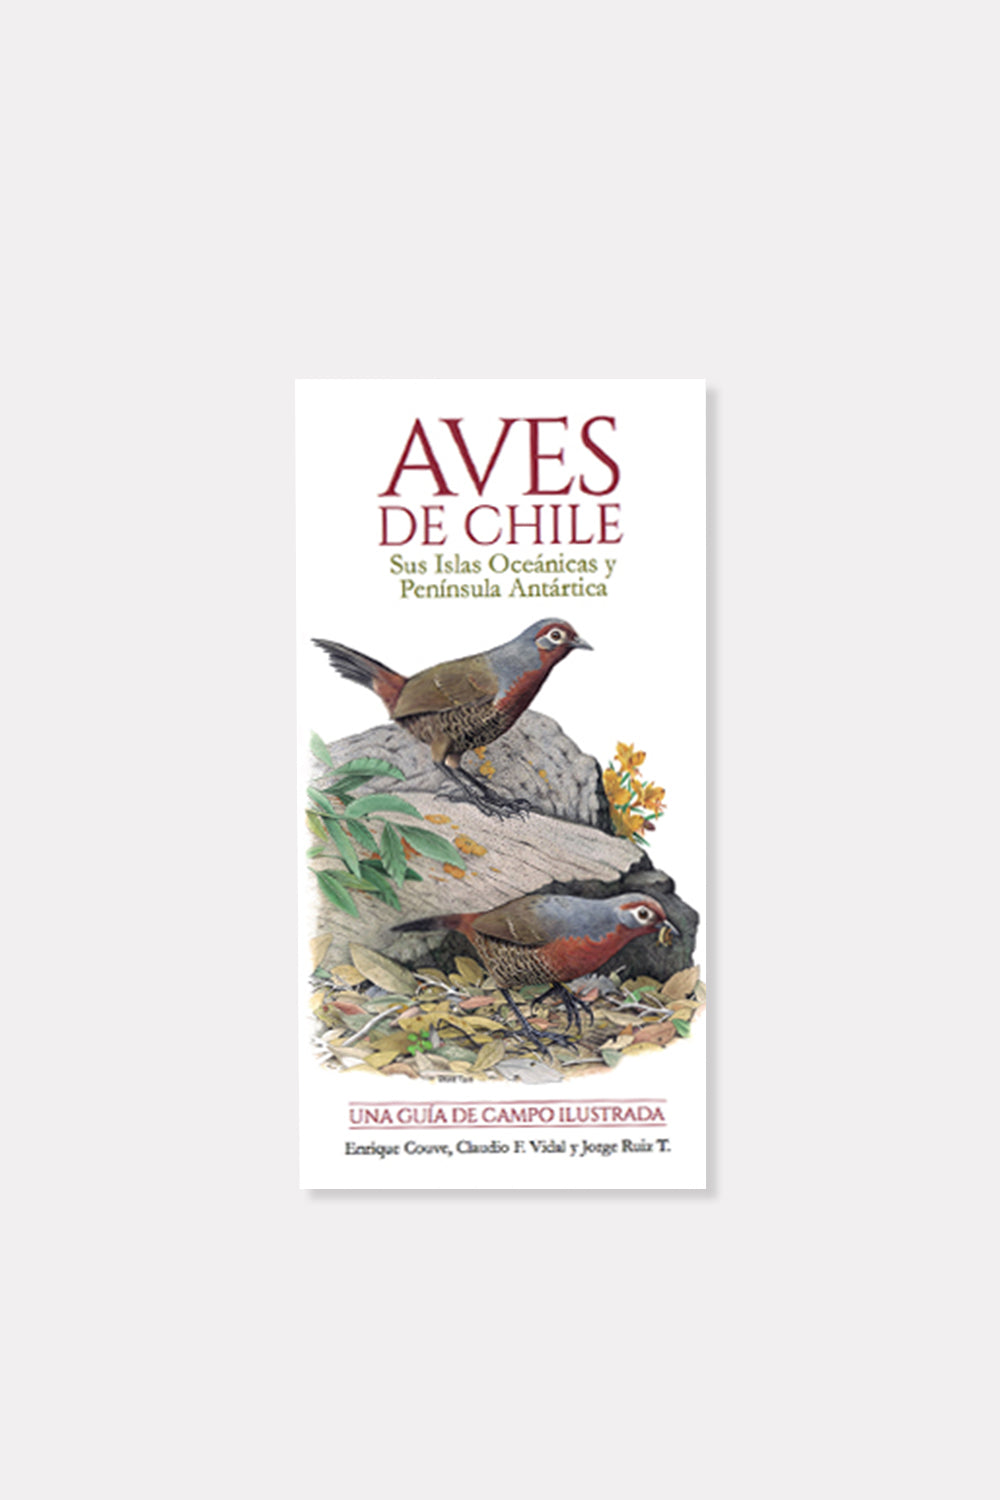 Libro "Aves de Chile de Couvé"